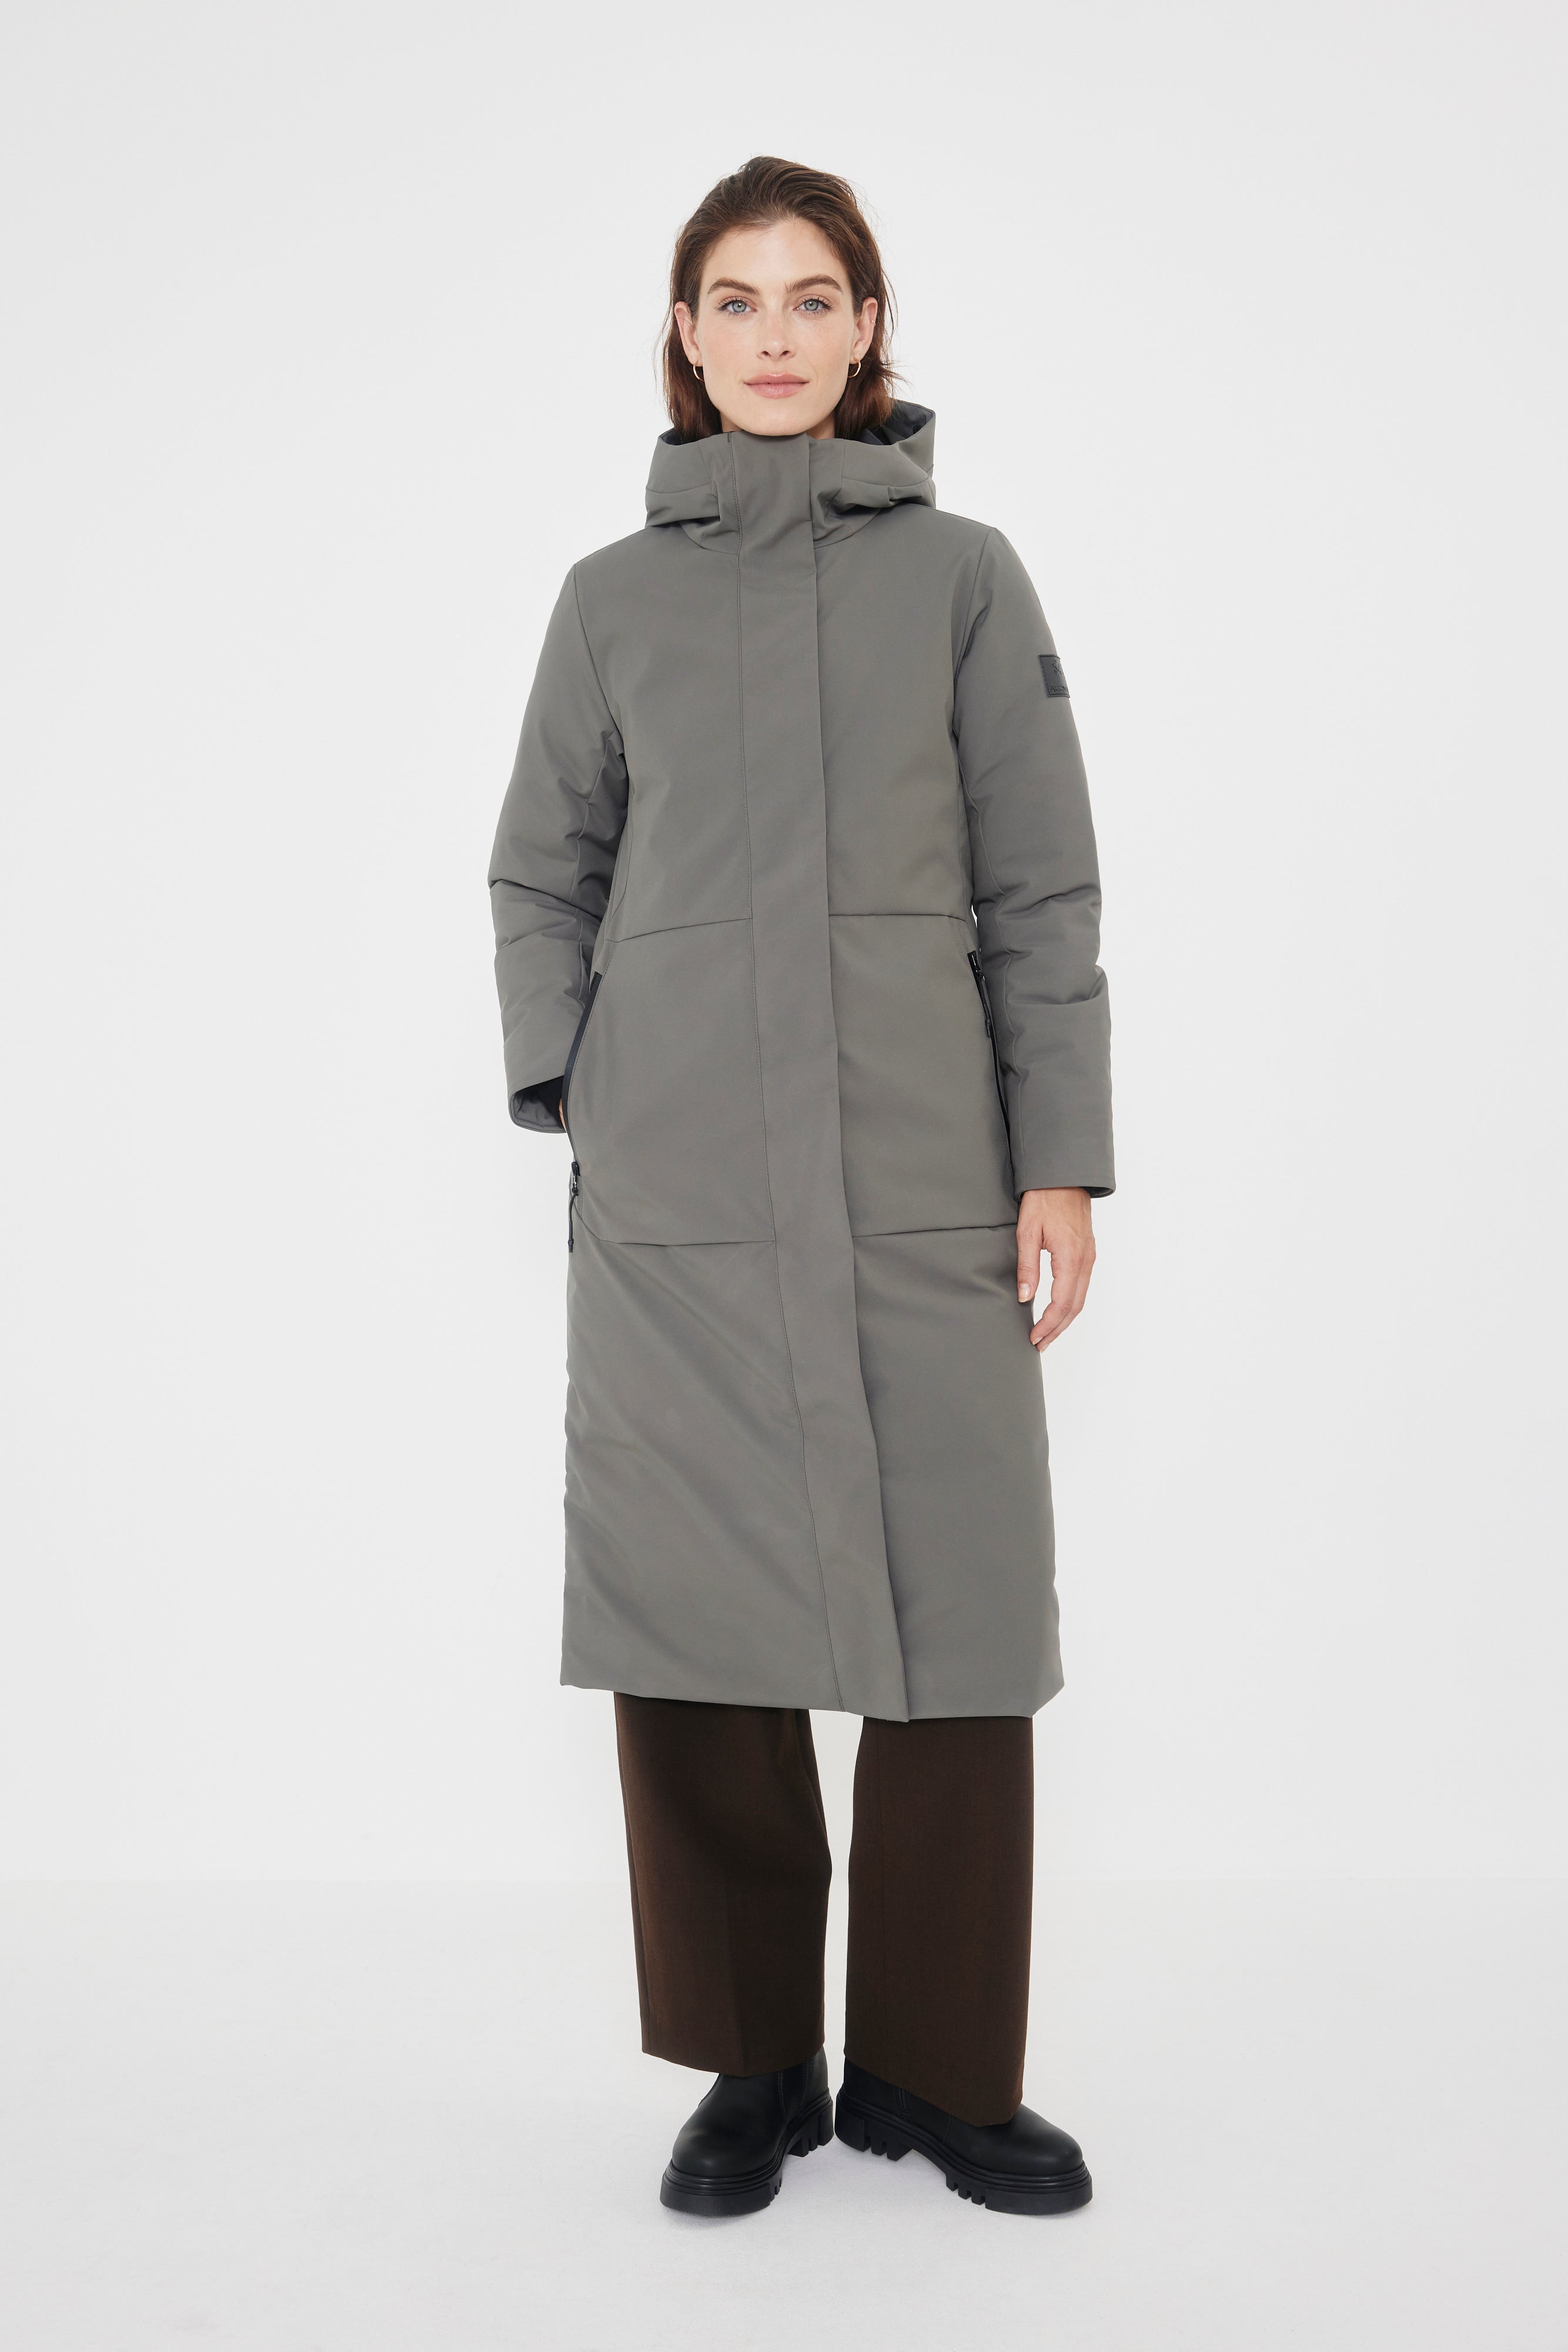 Manteau d'hiver pour femme PARIS RECYCLÉ | Audvik